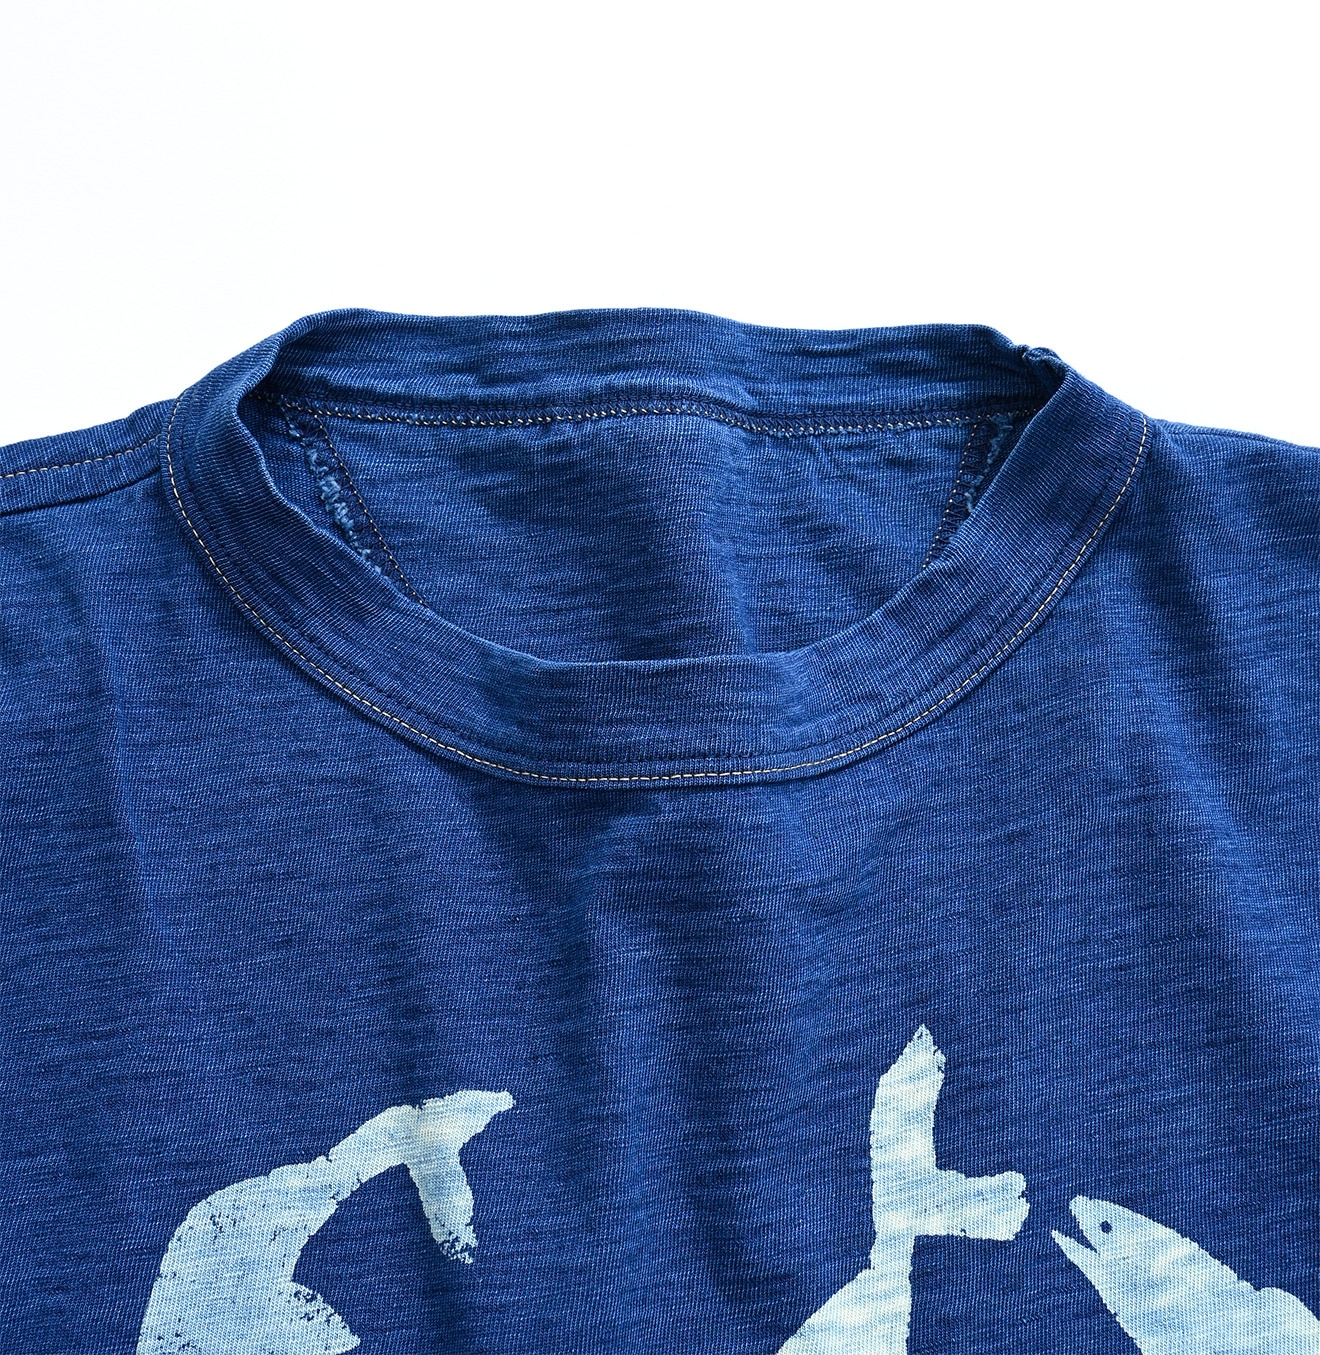 お店で人気の商品 美品 人気 45R スマアール刺繍の45星Tシャツ（再び・インディゴ） 藍染 得割60%:12353円  ブランド:フォーティファイブアール Tシャツ/カットソー (3/4丈/長袖)